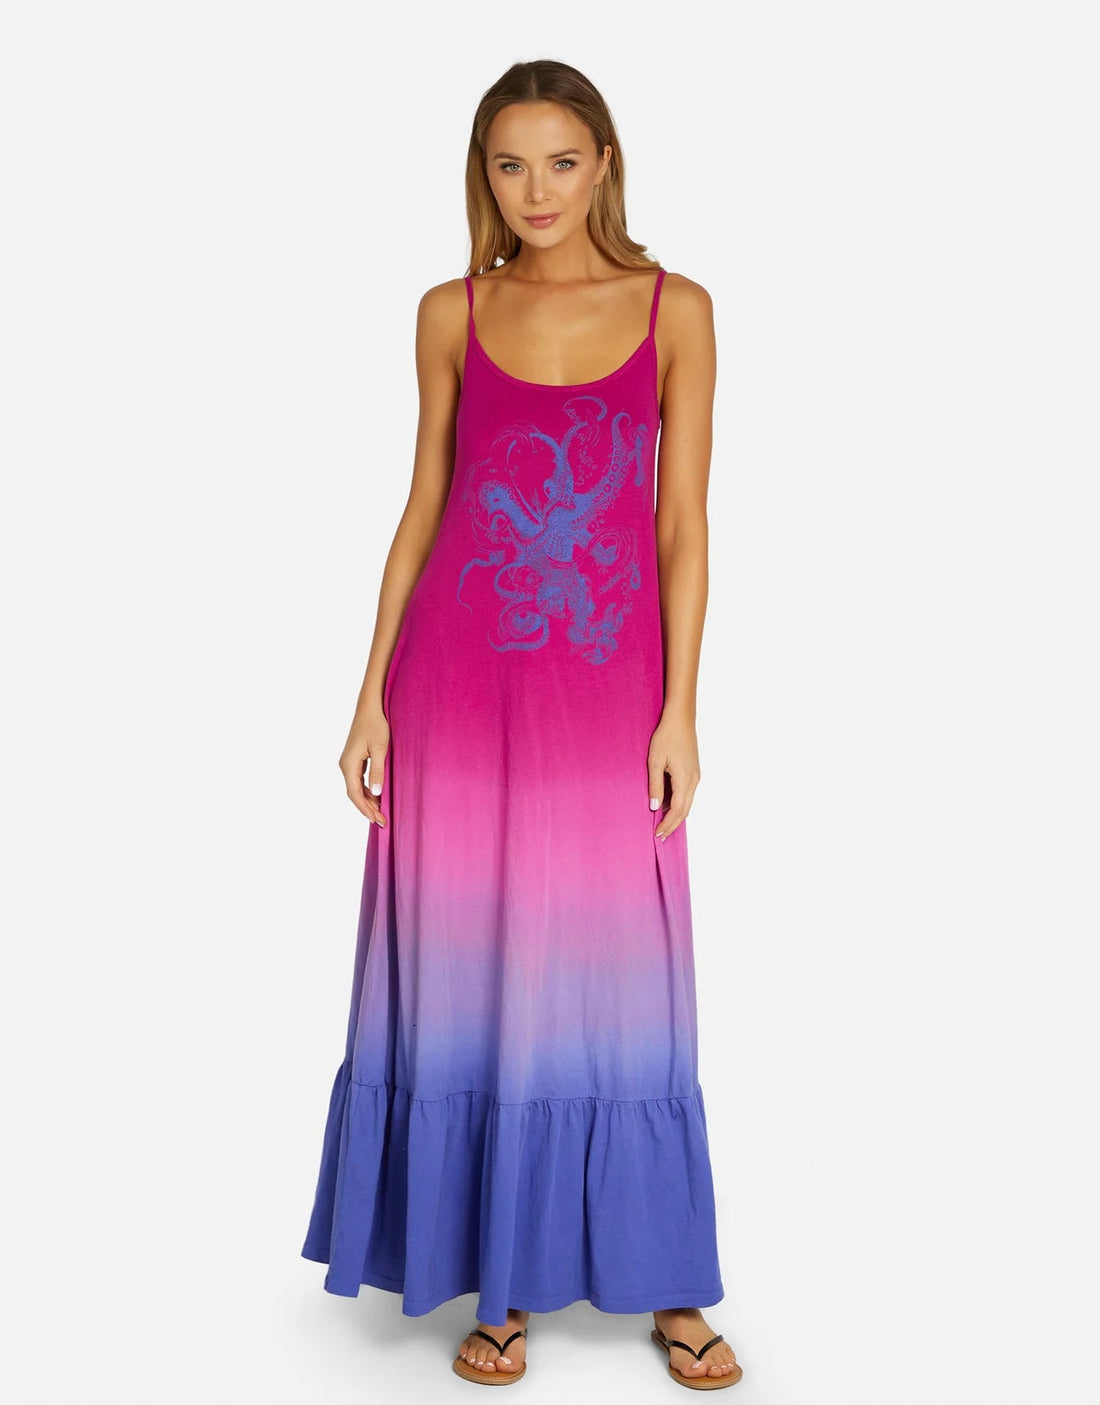 Dresses - Shop Womens Dresses, Party Dresses, Maxi Dresses Online ...